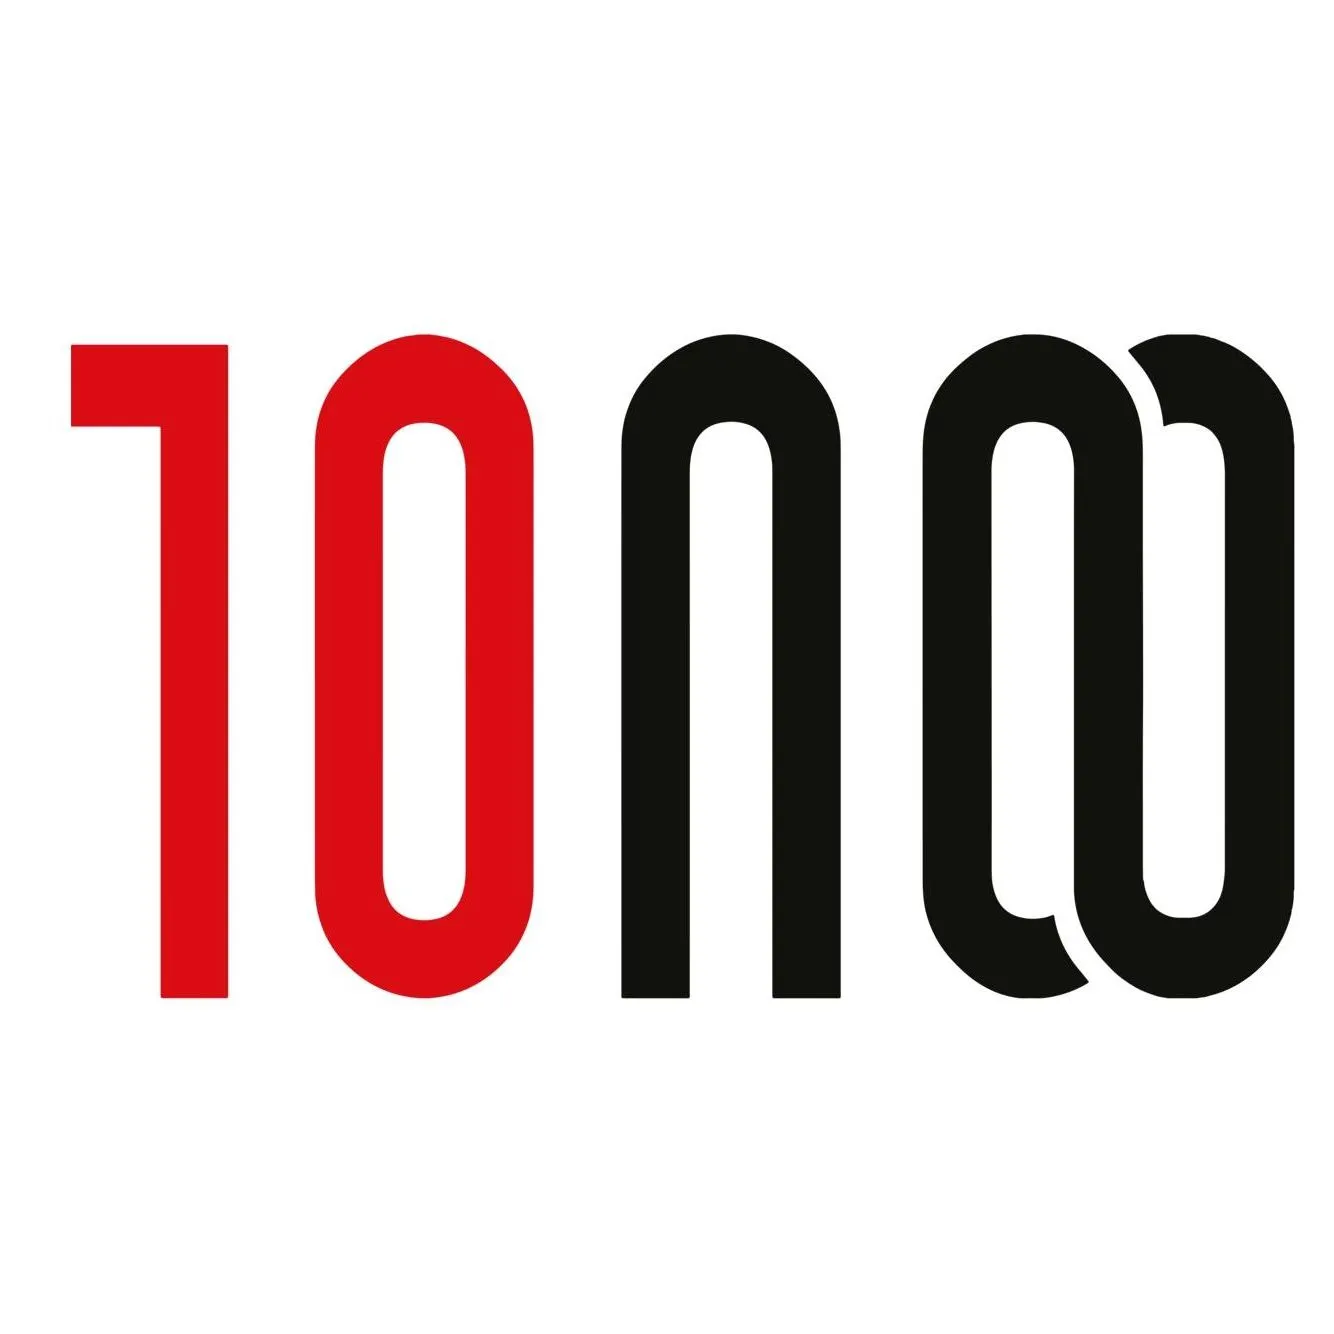 10noo.com